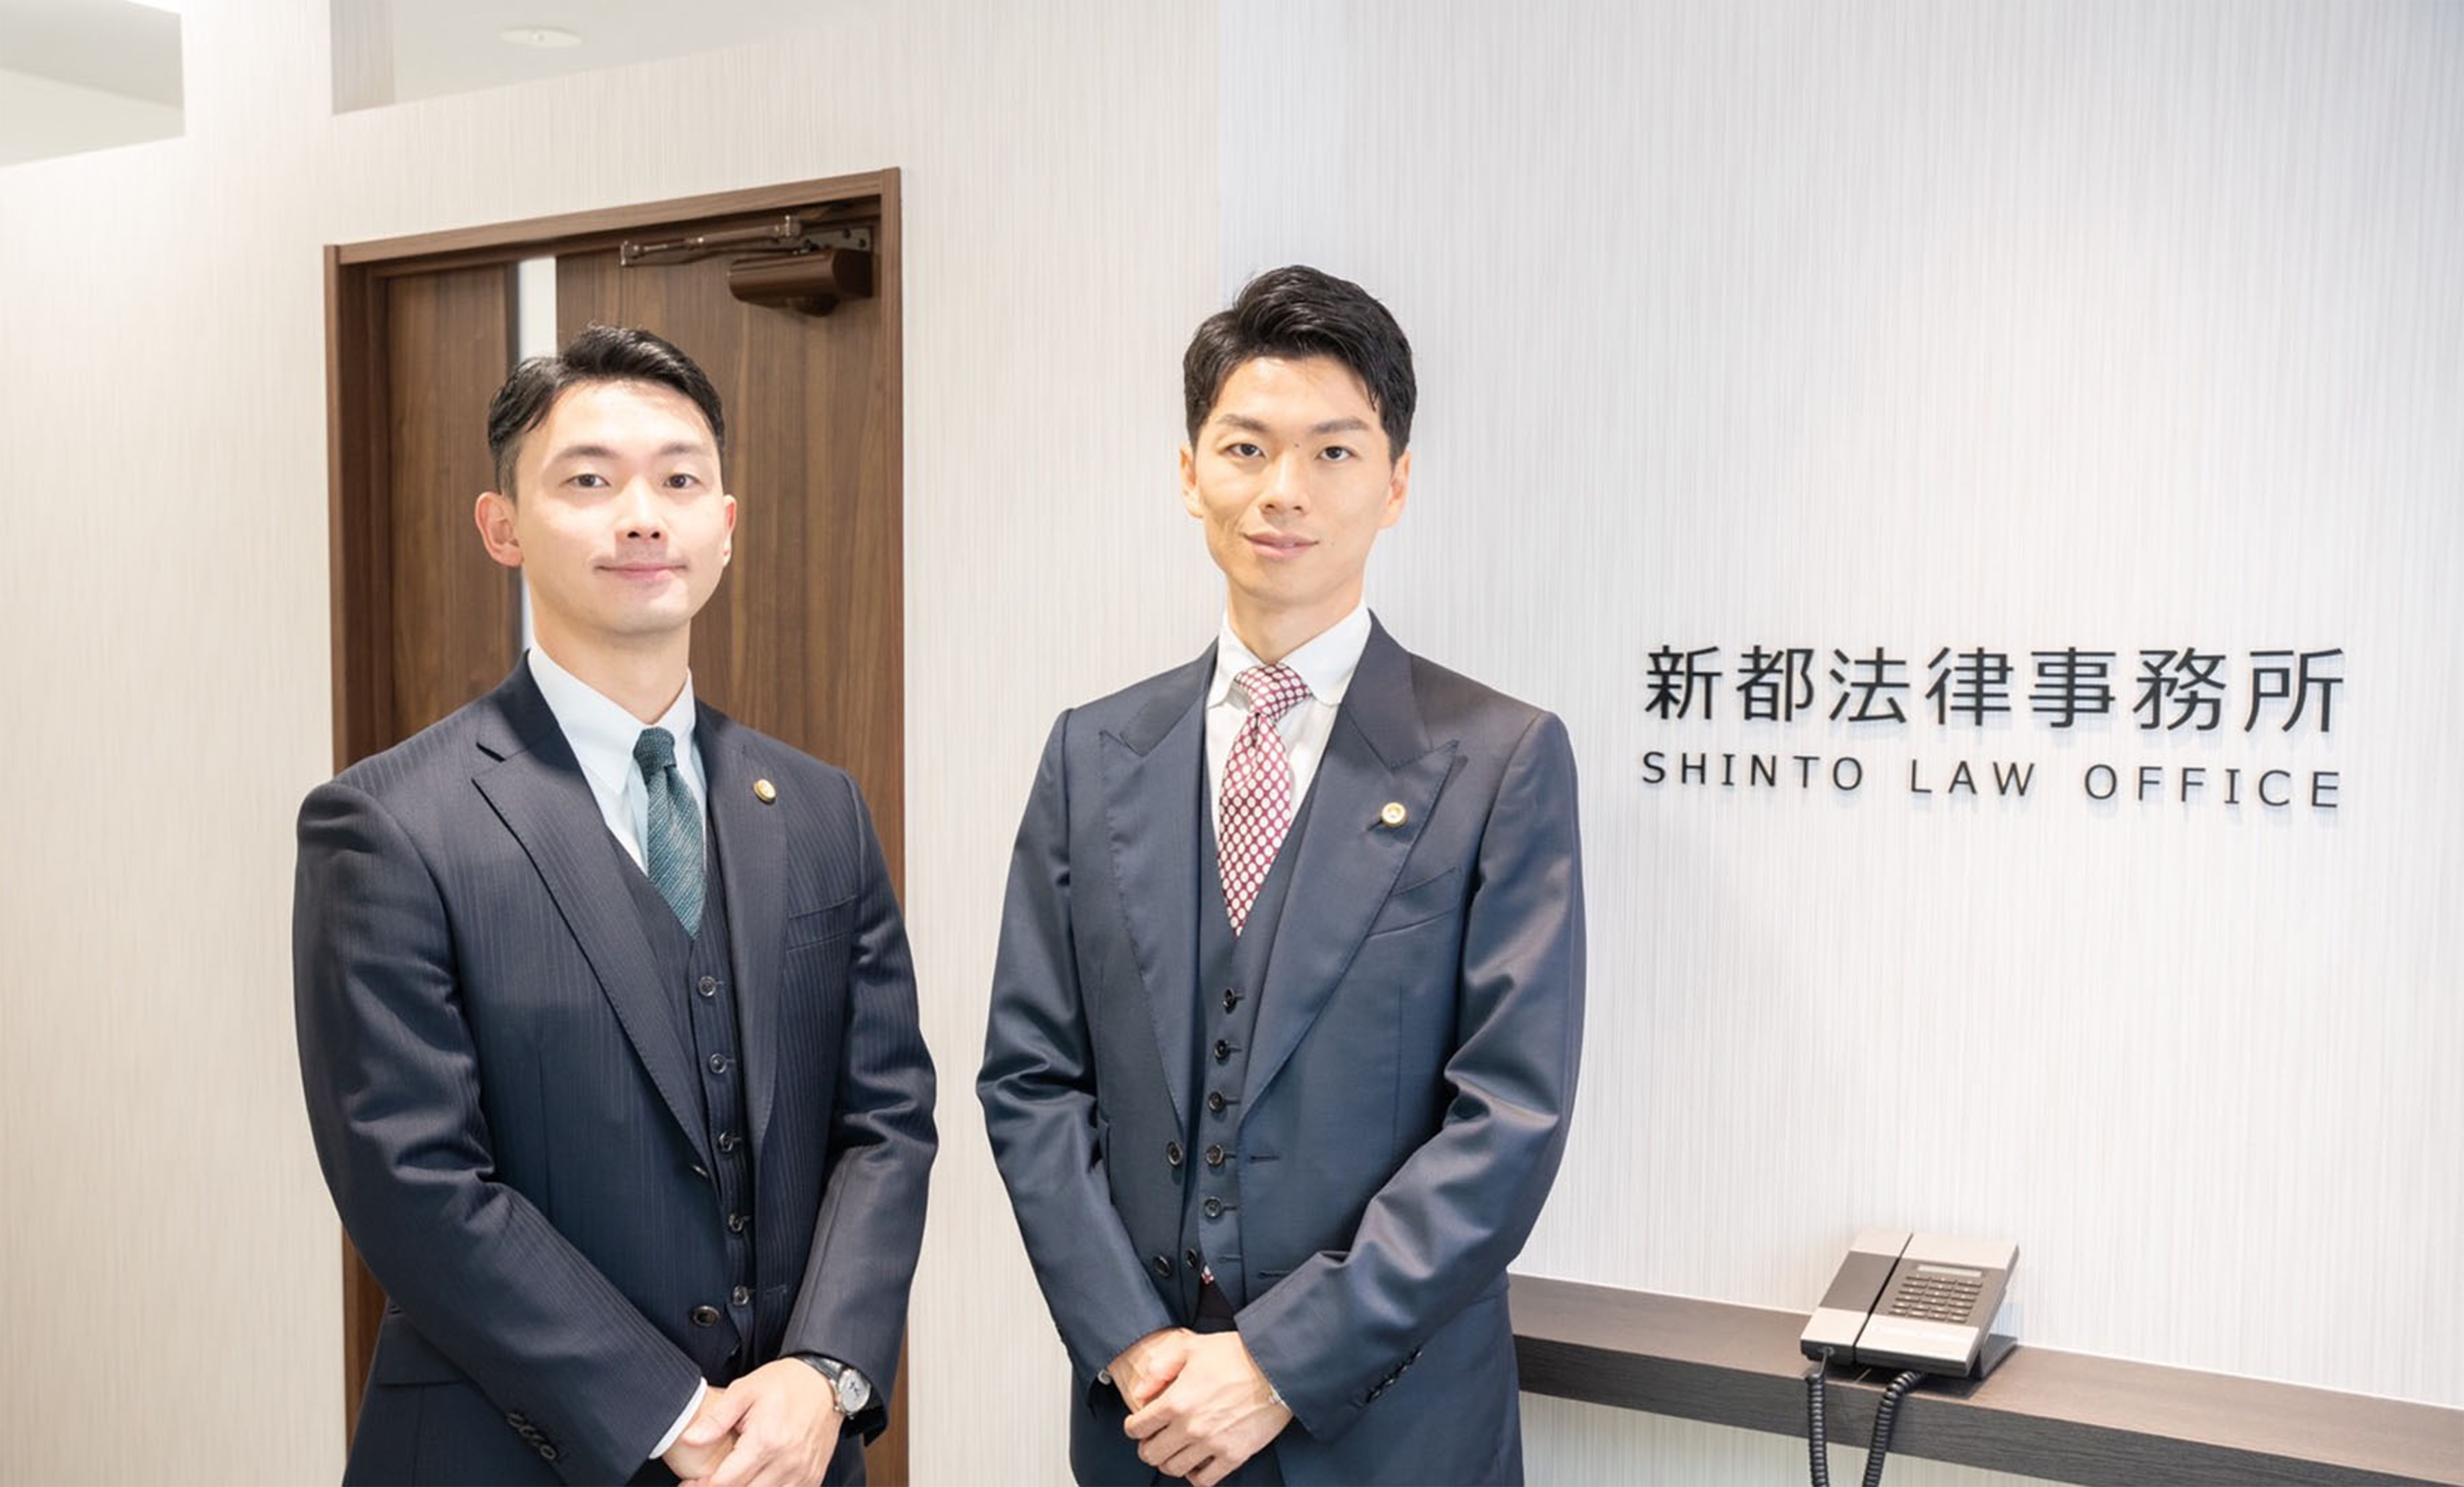 新都法律事務所 SHINTO LAW OFFICE